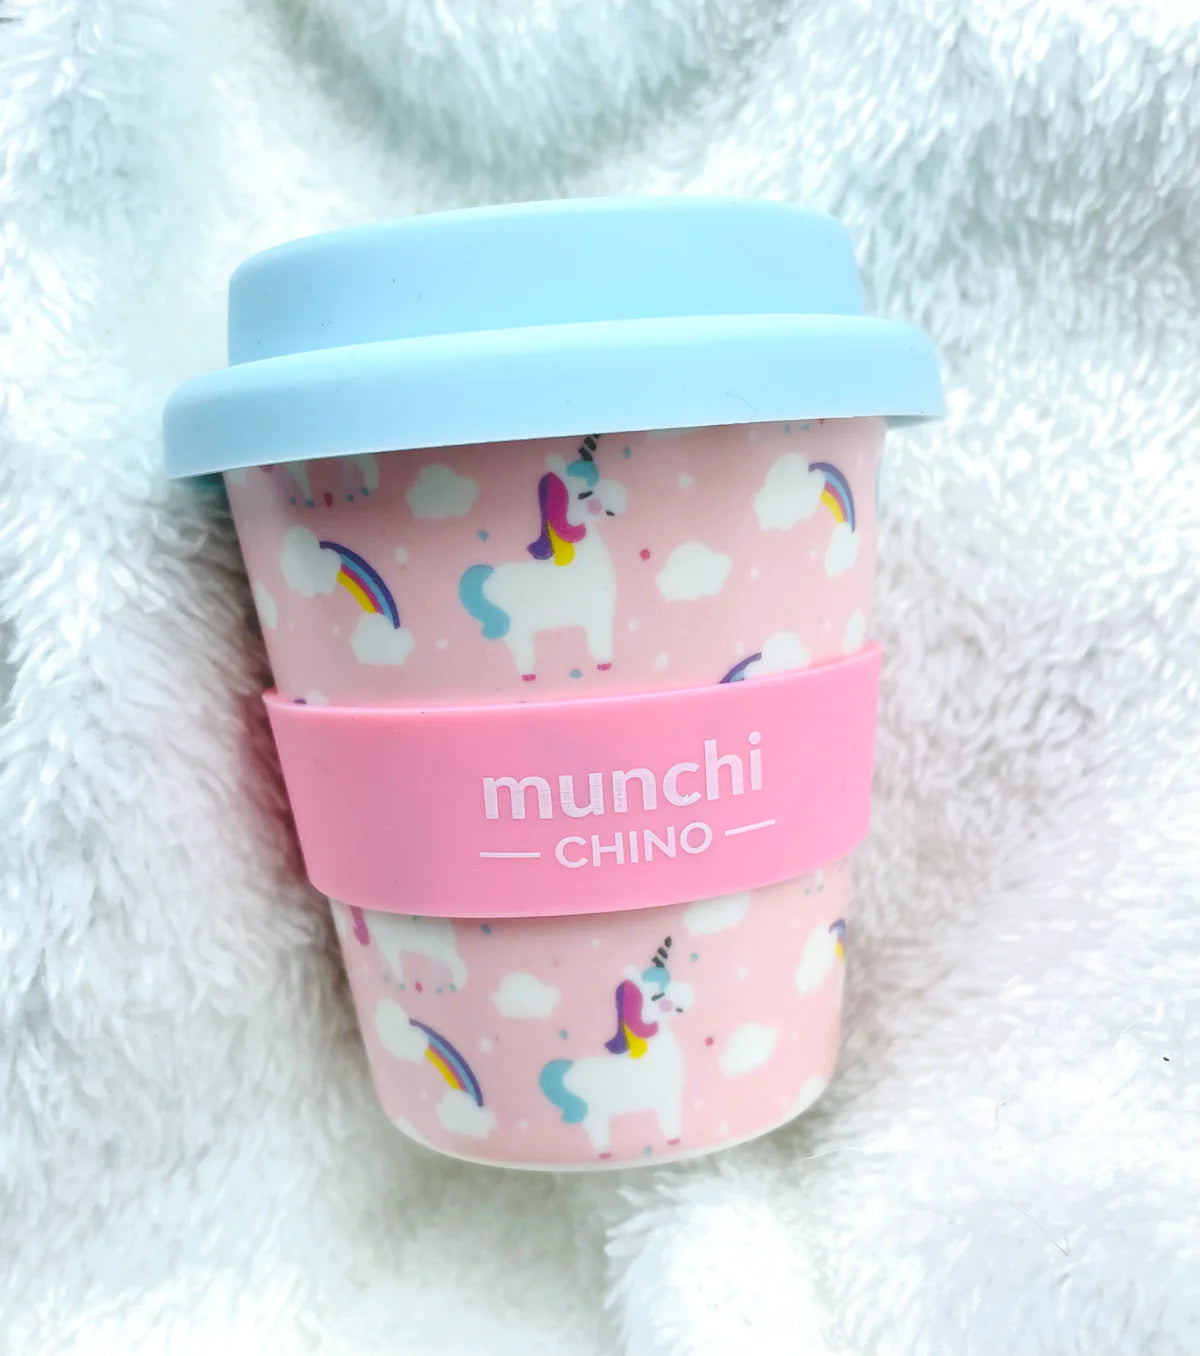 Munchi Chino Cups Unicorn